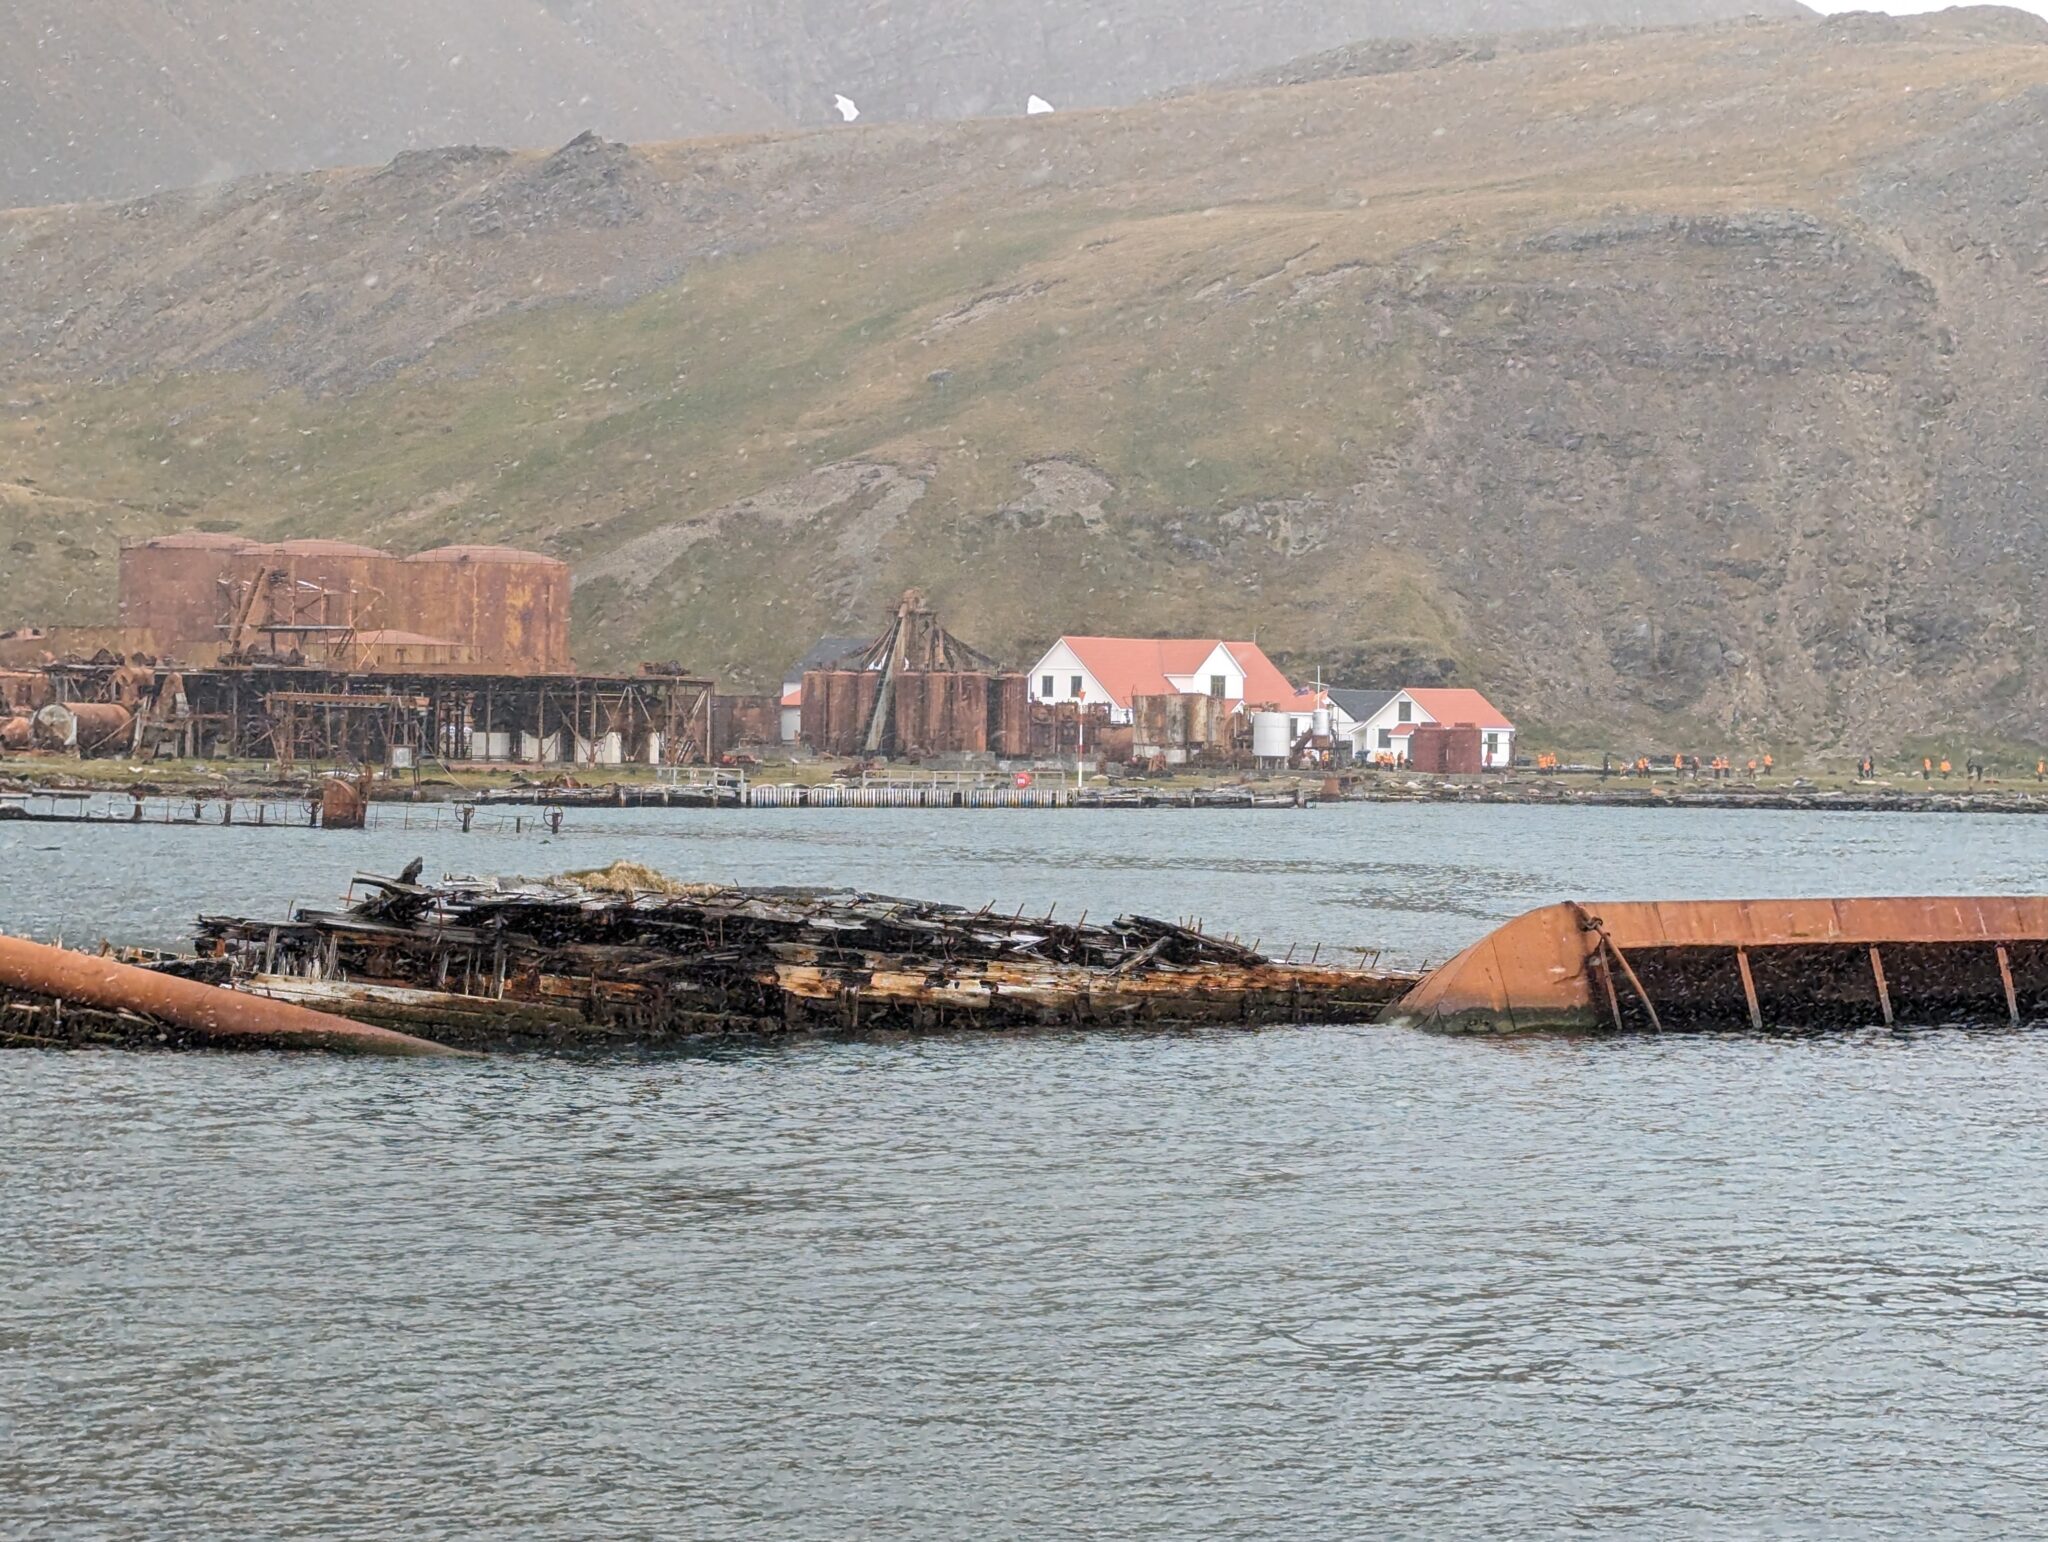 Grytviken whaling station 